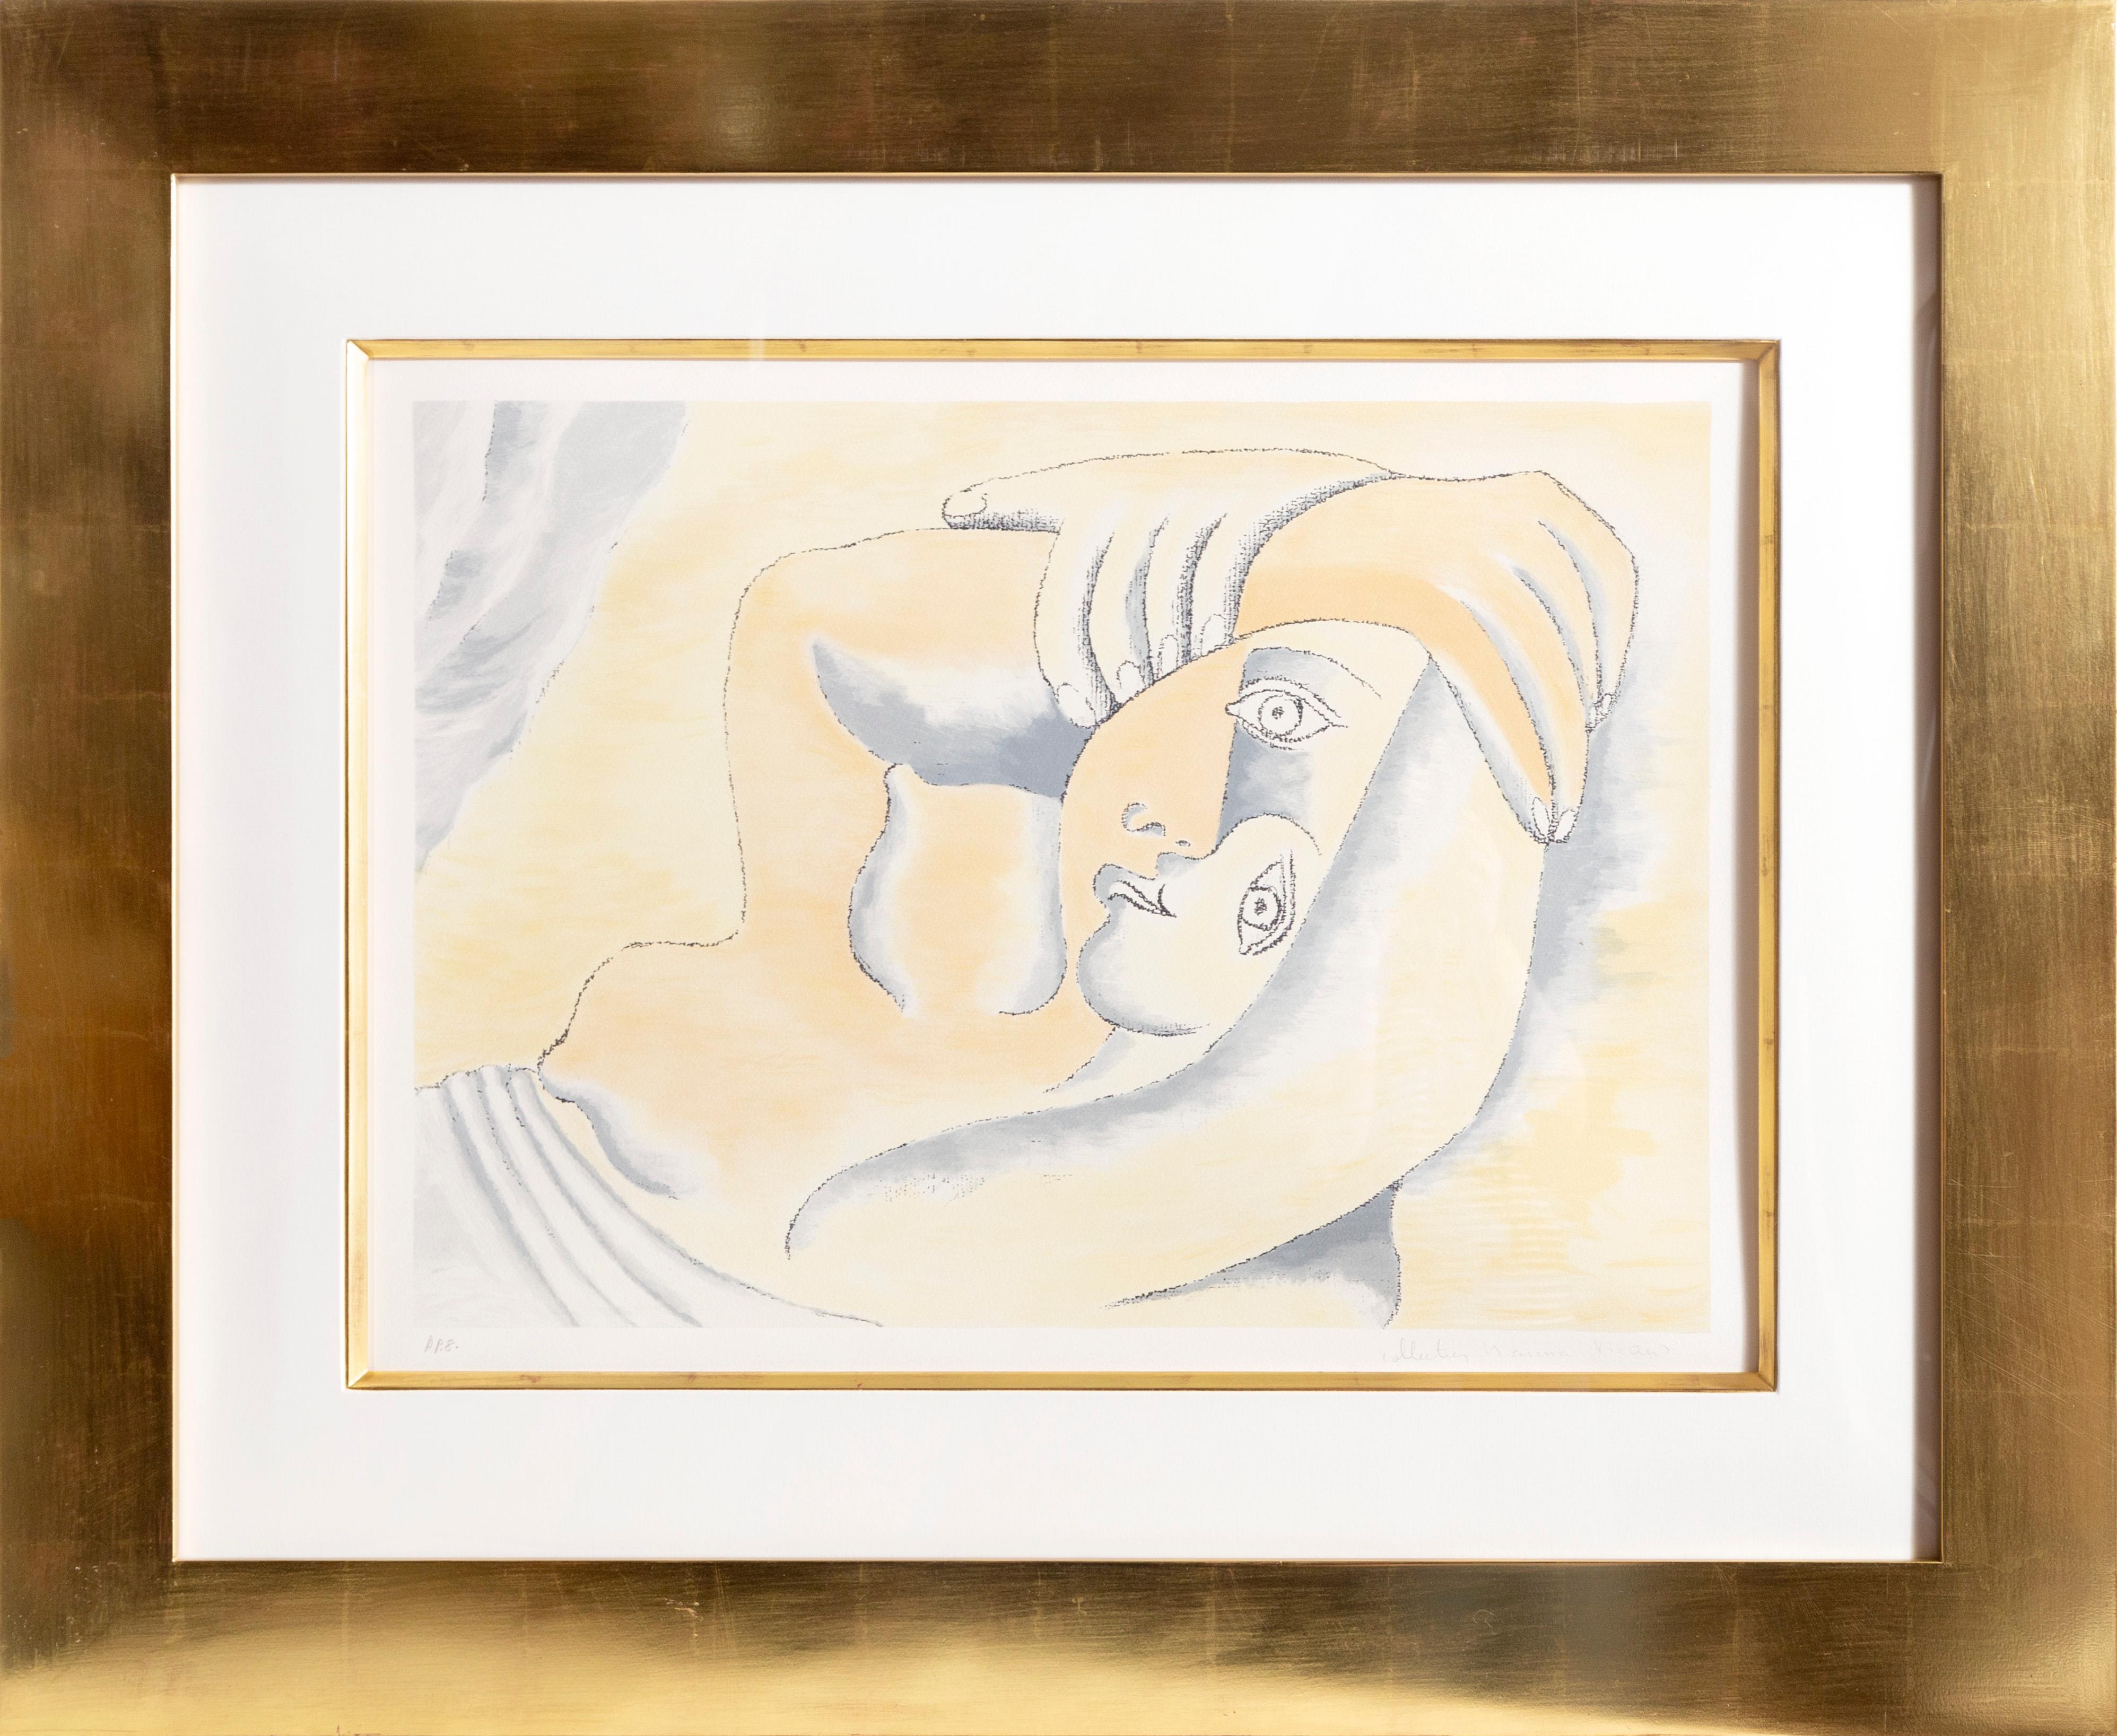 Lithographie de la Collection S de Marina Picasso d'après le tableau de Pablo Picasso "Femme Couchée". La peinture originale a été achevée en 1929. Dans les années 1970, après la mort de Picasso, Marina Picasso, sa petite-fille, a autorisé la